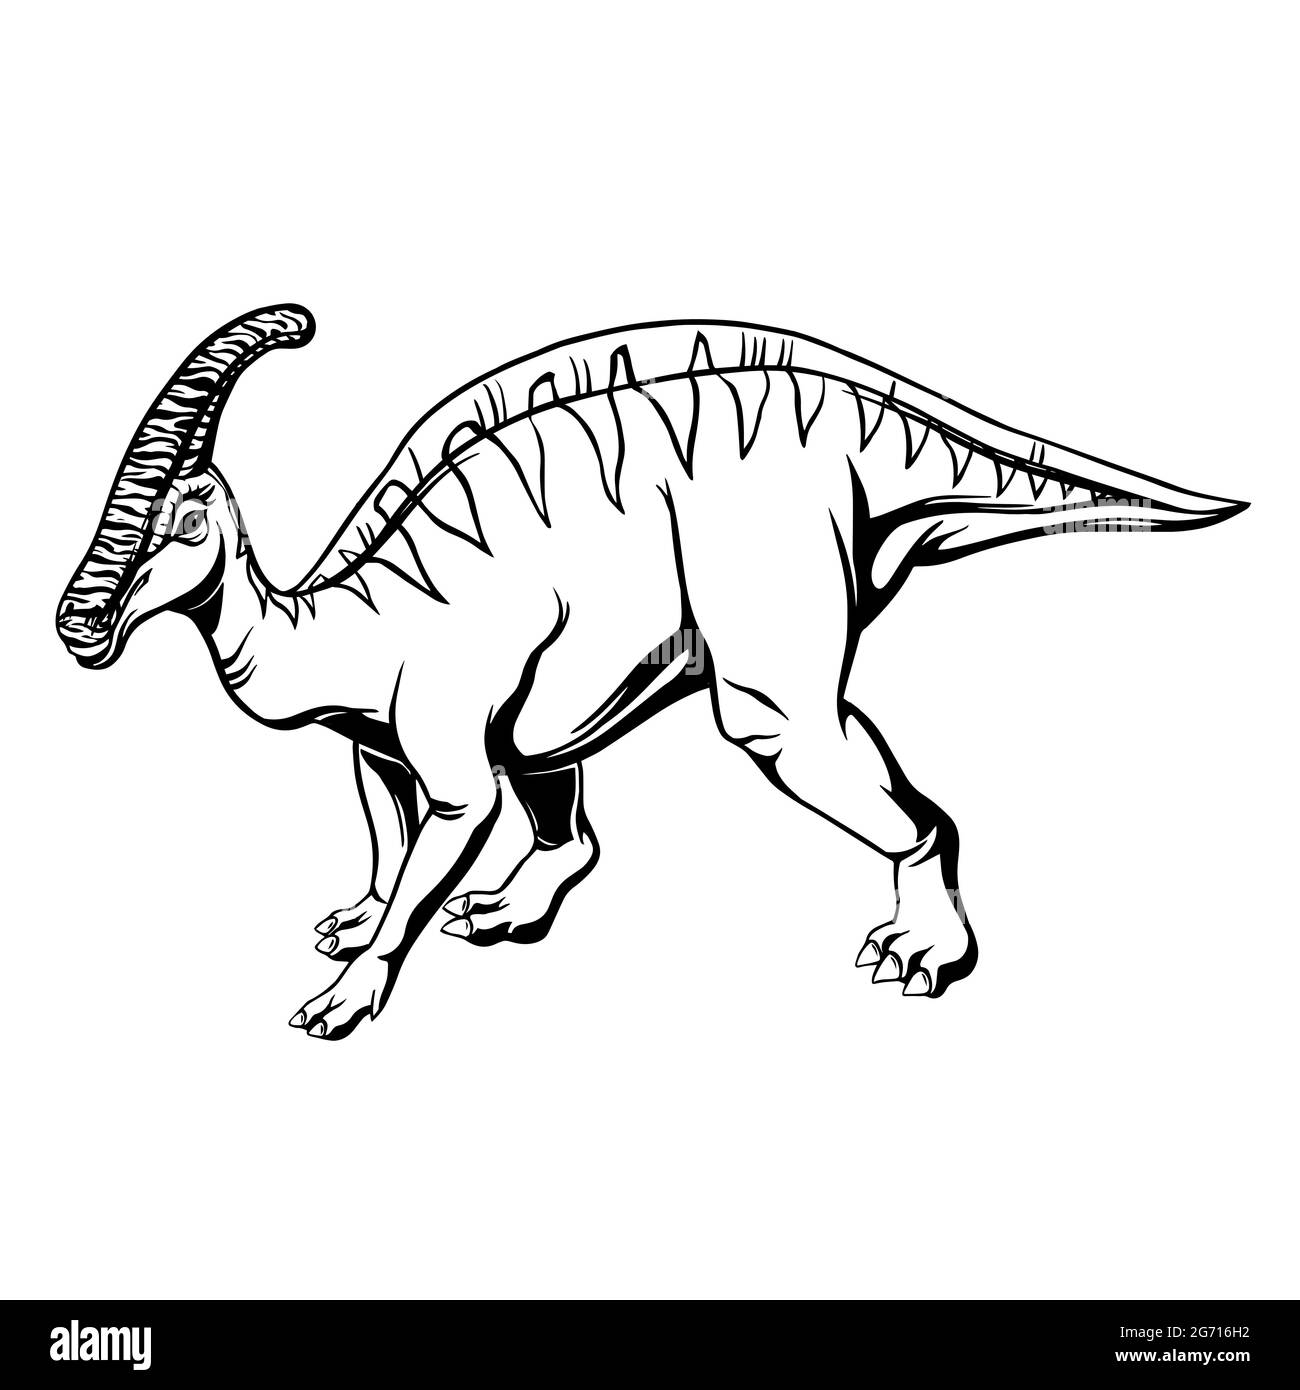 Hadrosaurus fumetti disegnati a mano per stampa, tatuaggio, design e logo. Illustrazione vettoriale. Illustrazione Vettoriale